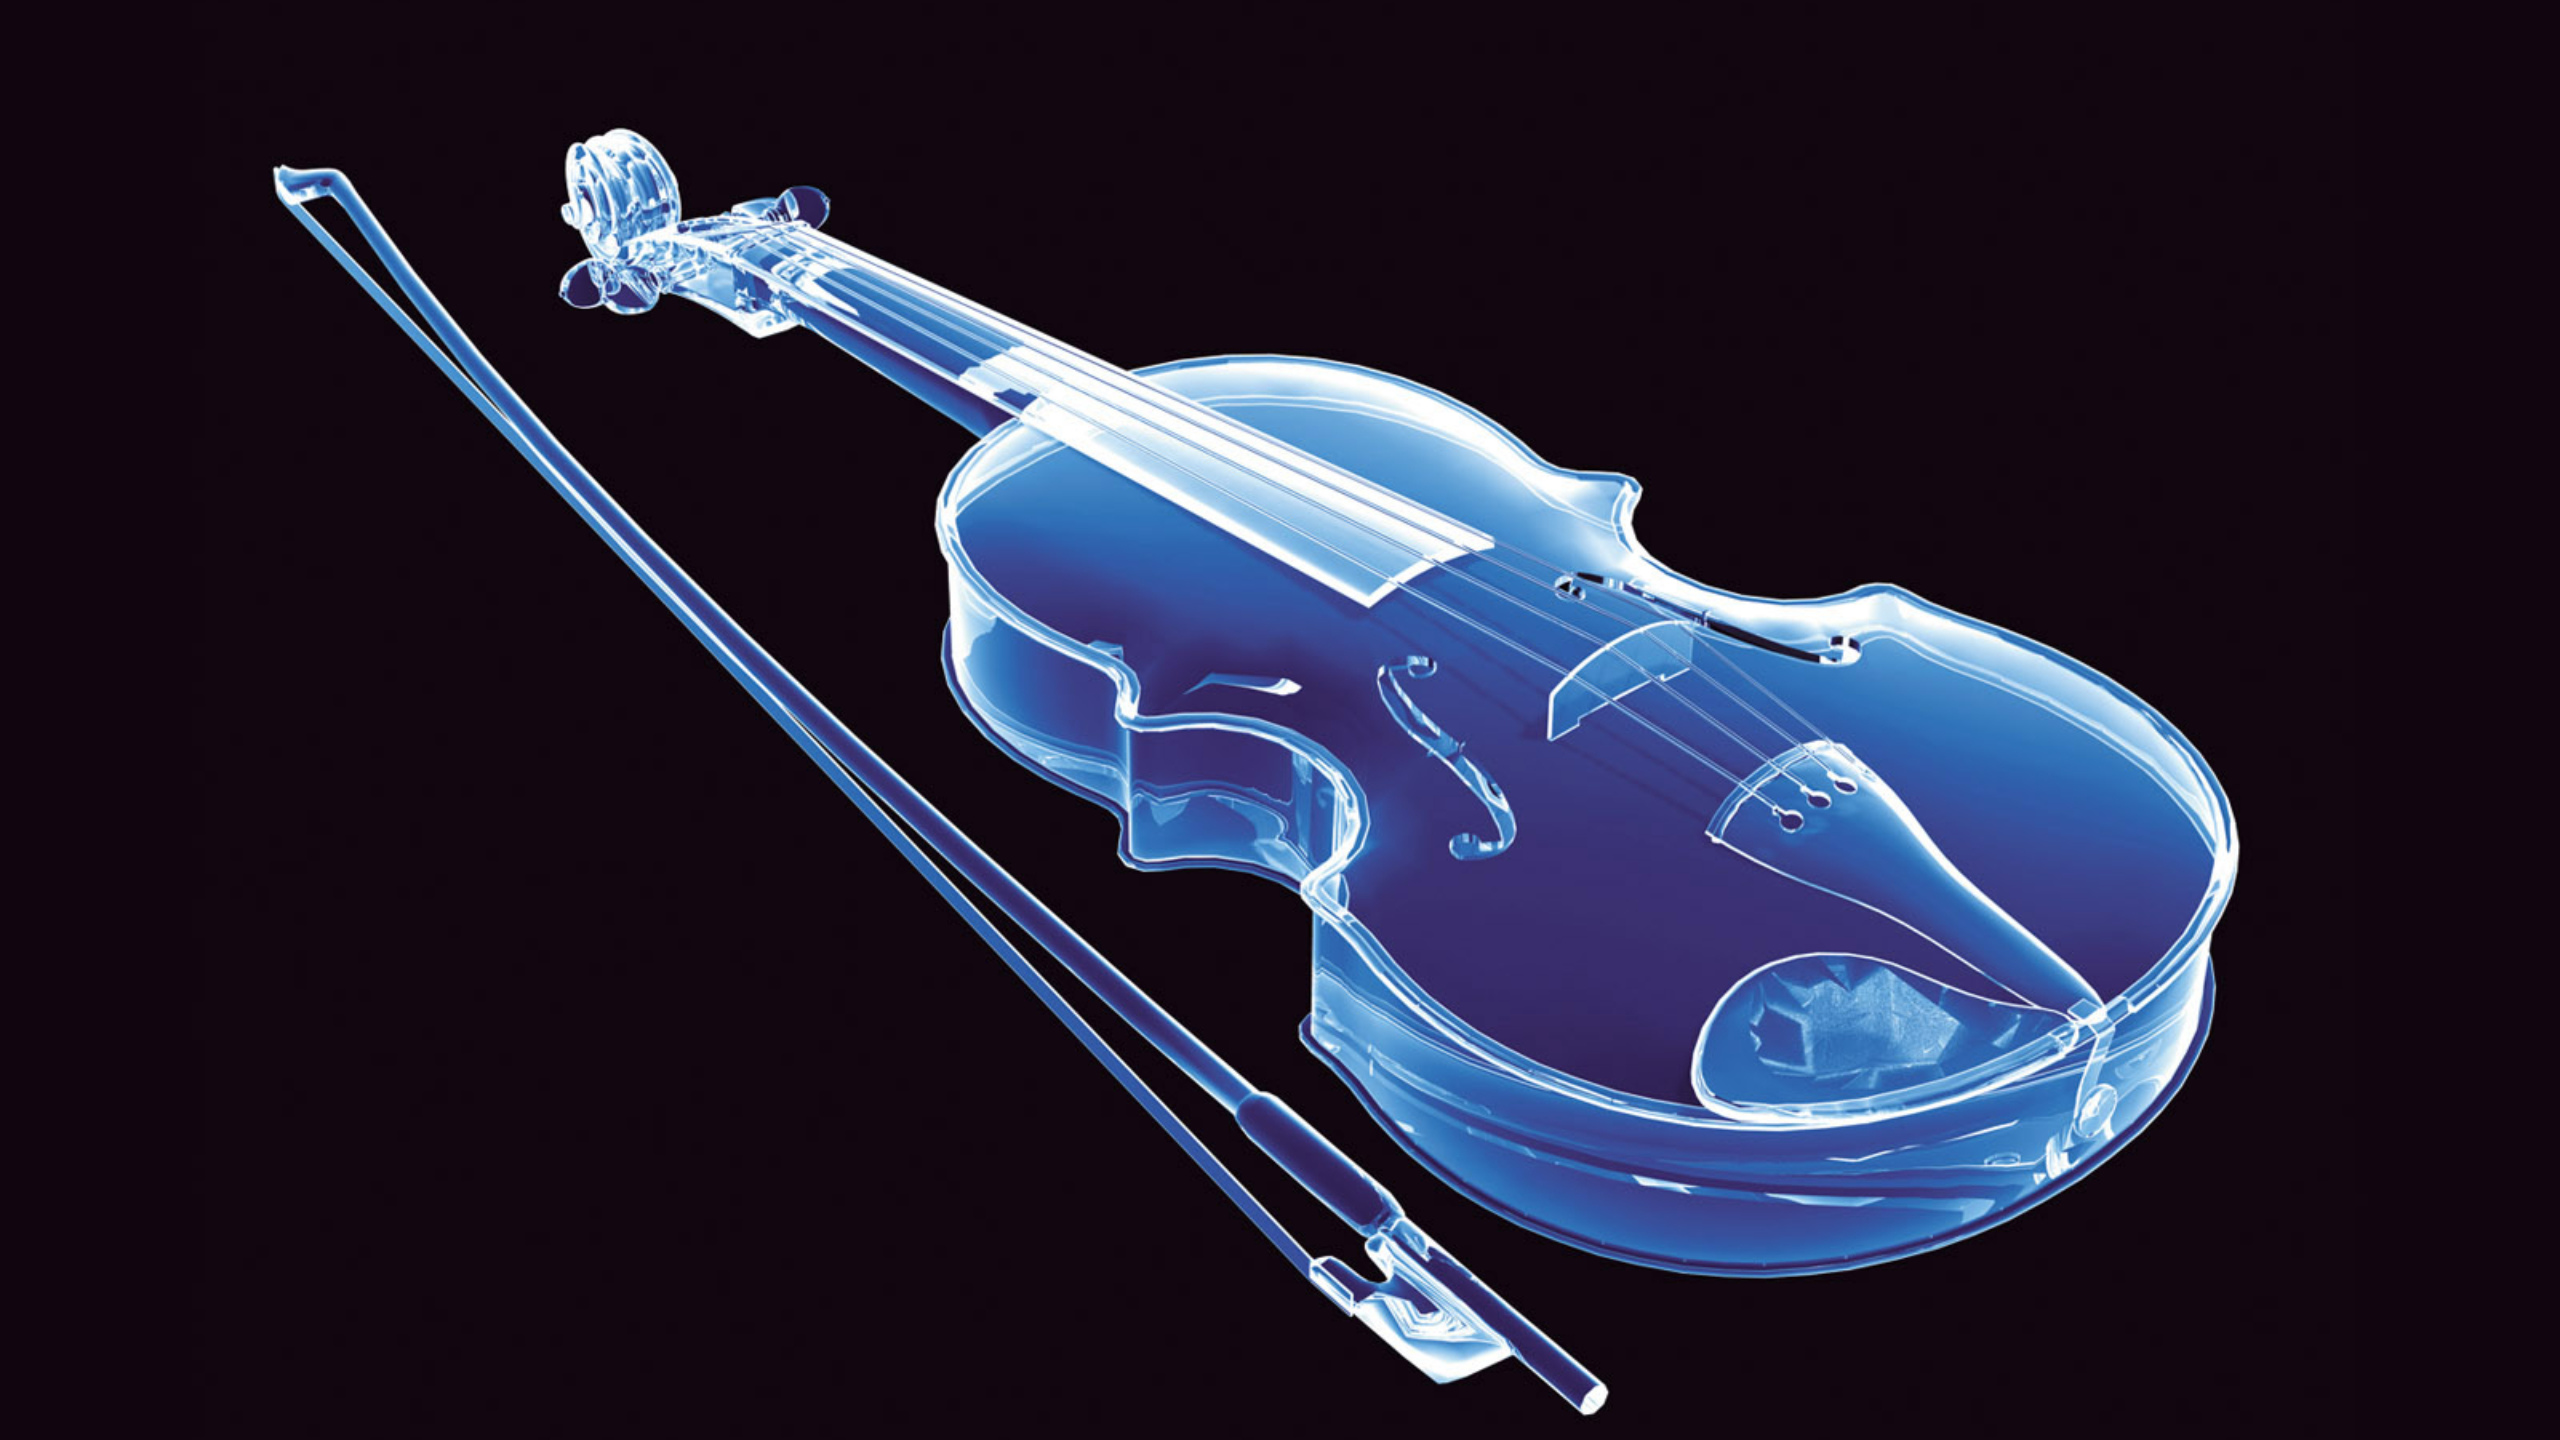 Violin скрипка. Скрипка. Скрипка музыкальный инструмент. Скрипка на черном фоне. Красивая скрипка.